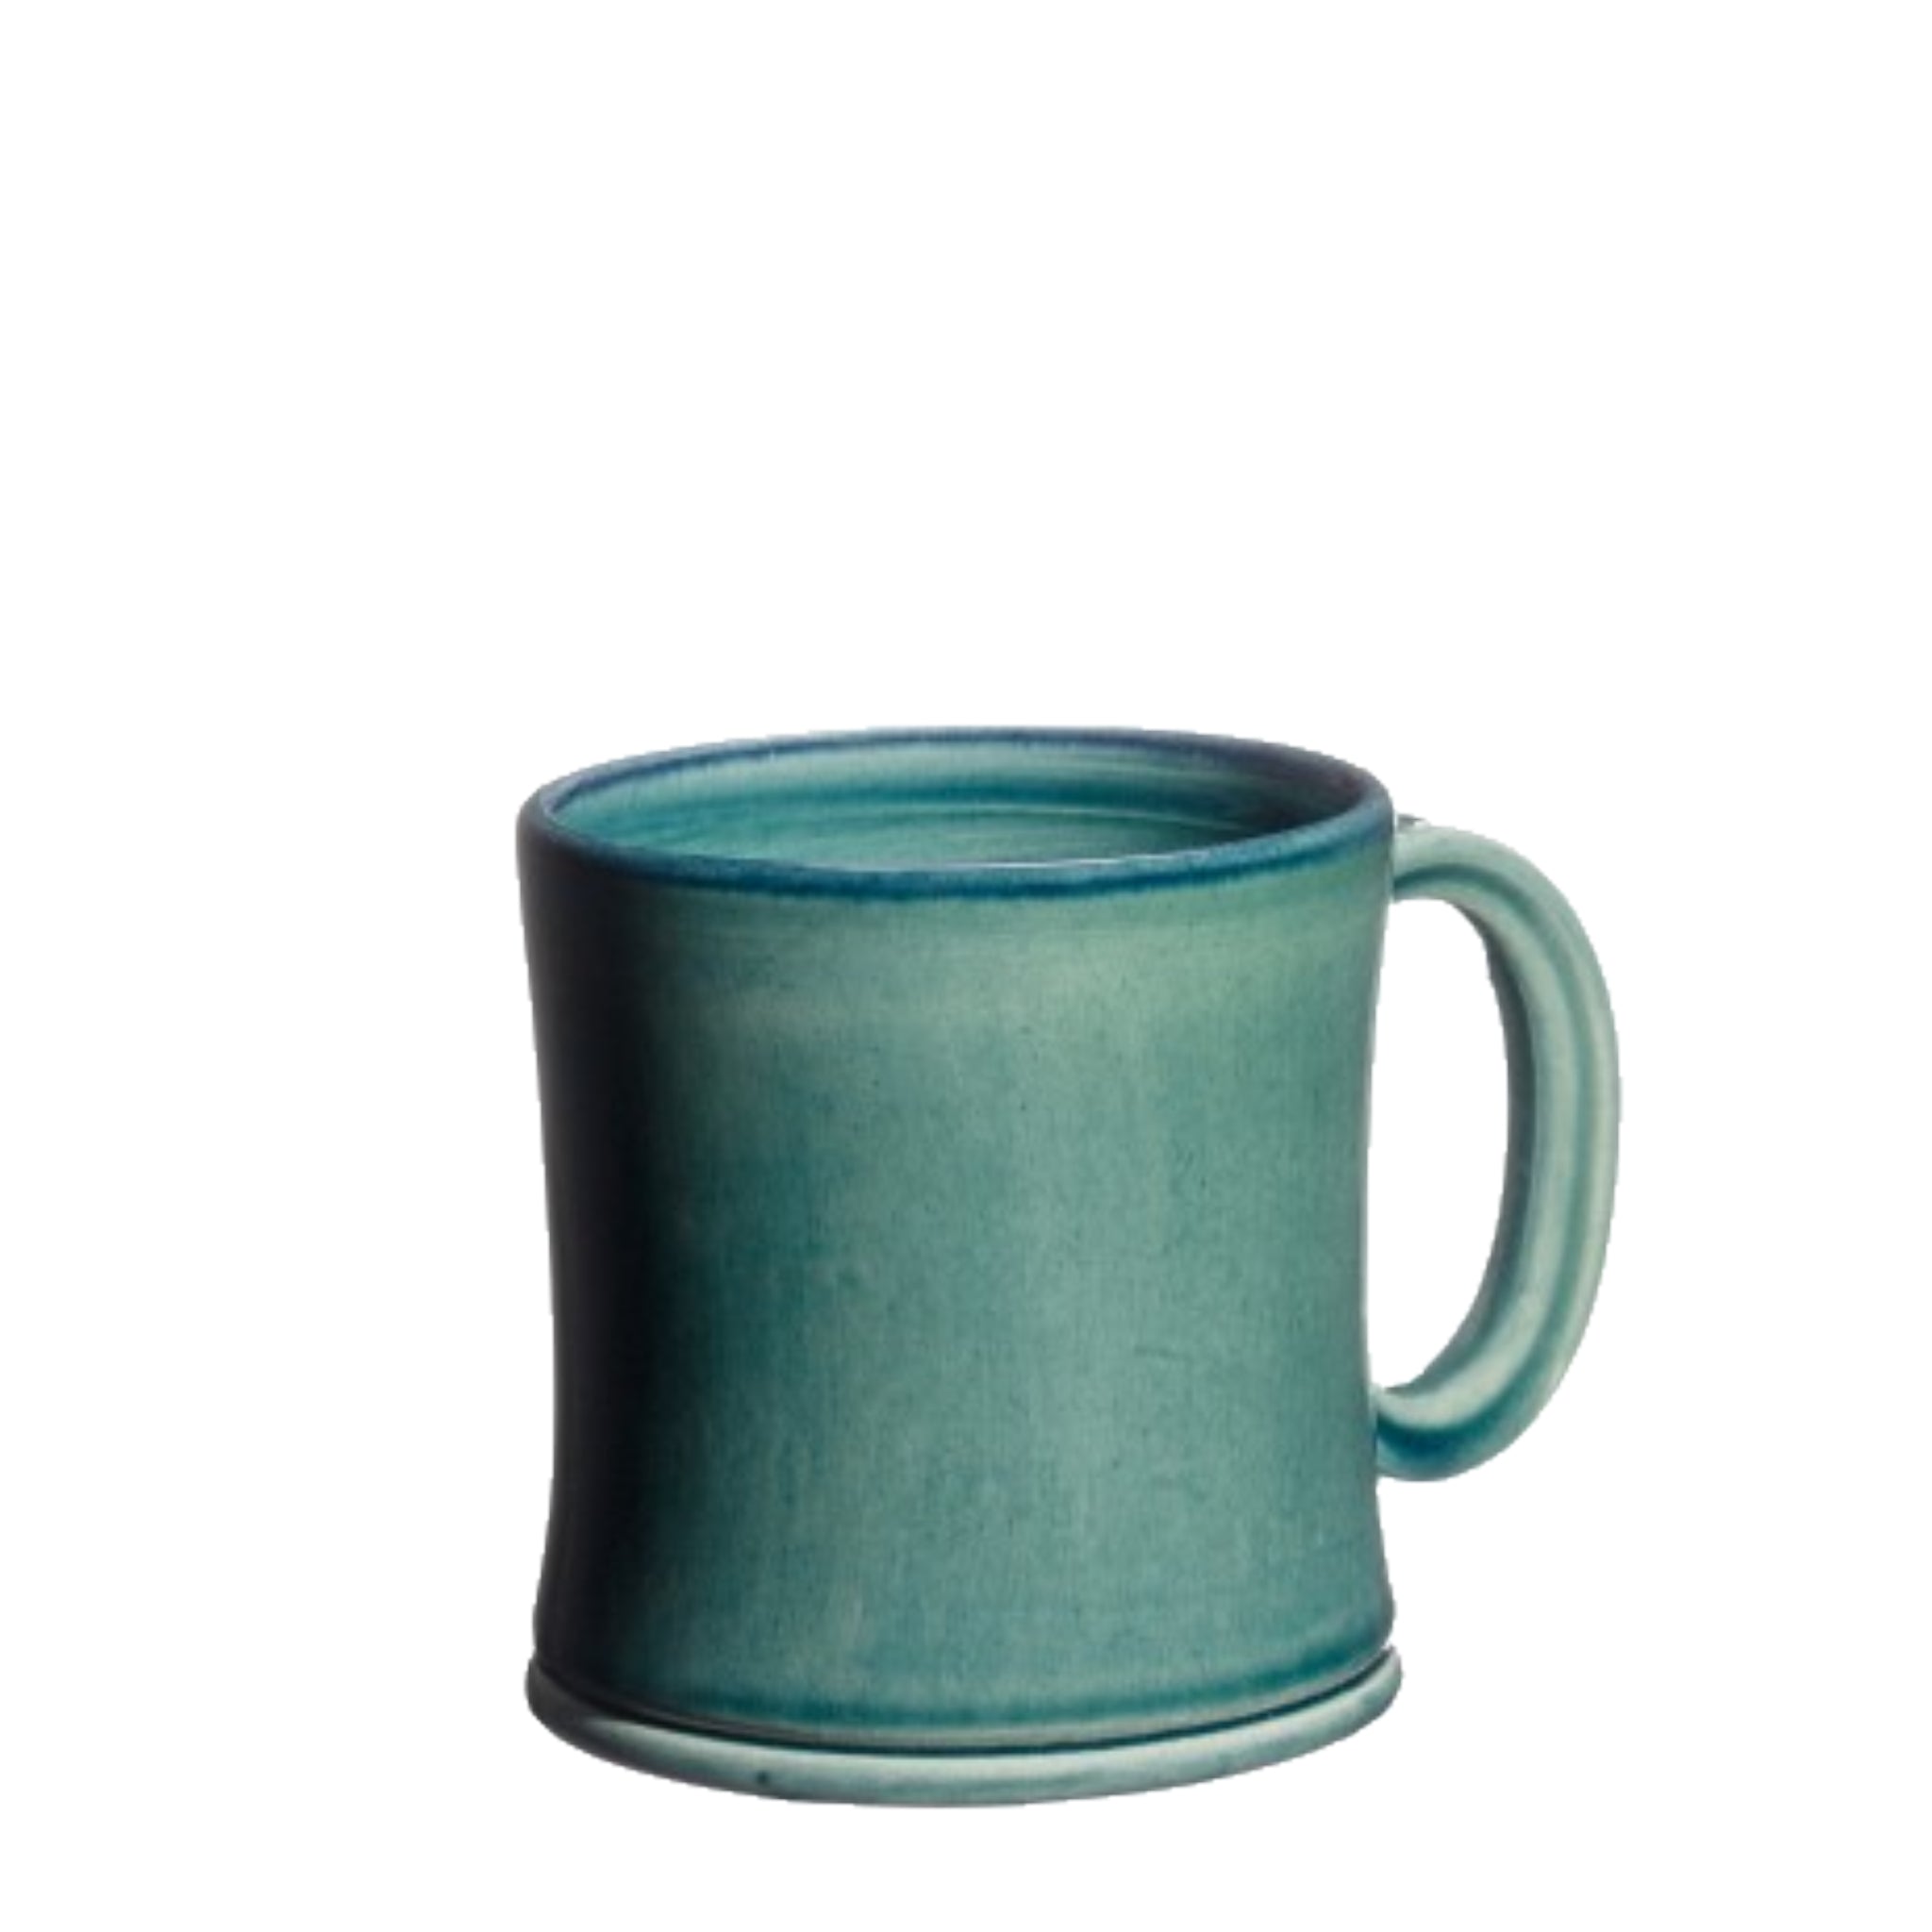 Håndlavet keramikkrus i farven blågrøn fra Atelier Bernex, Oliviers & Co